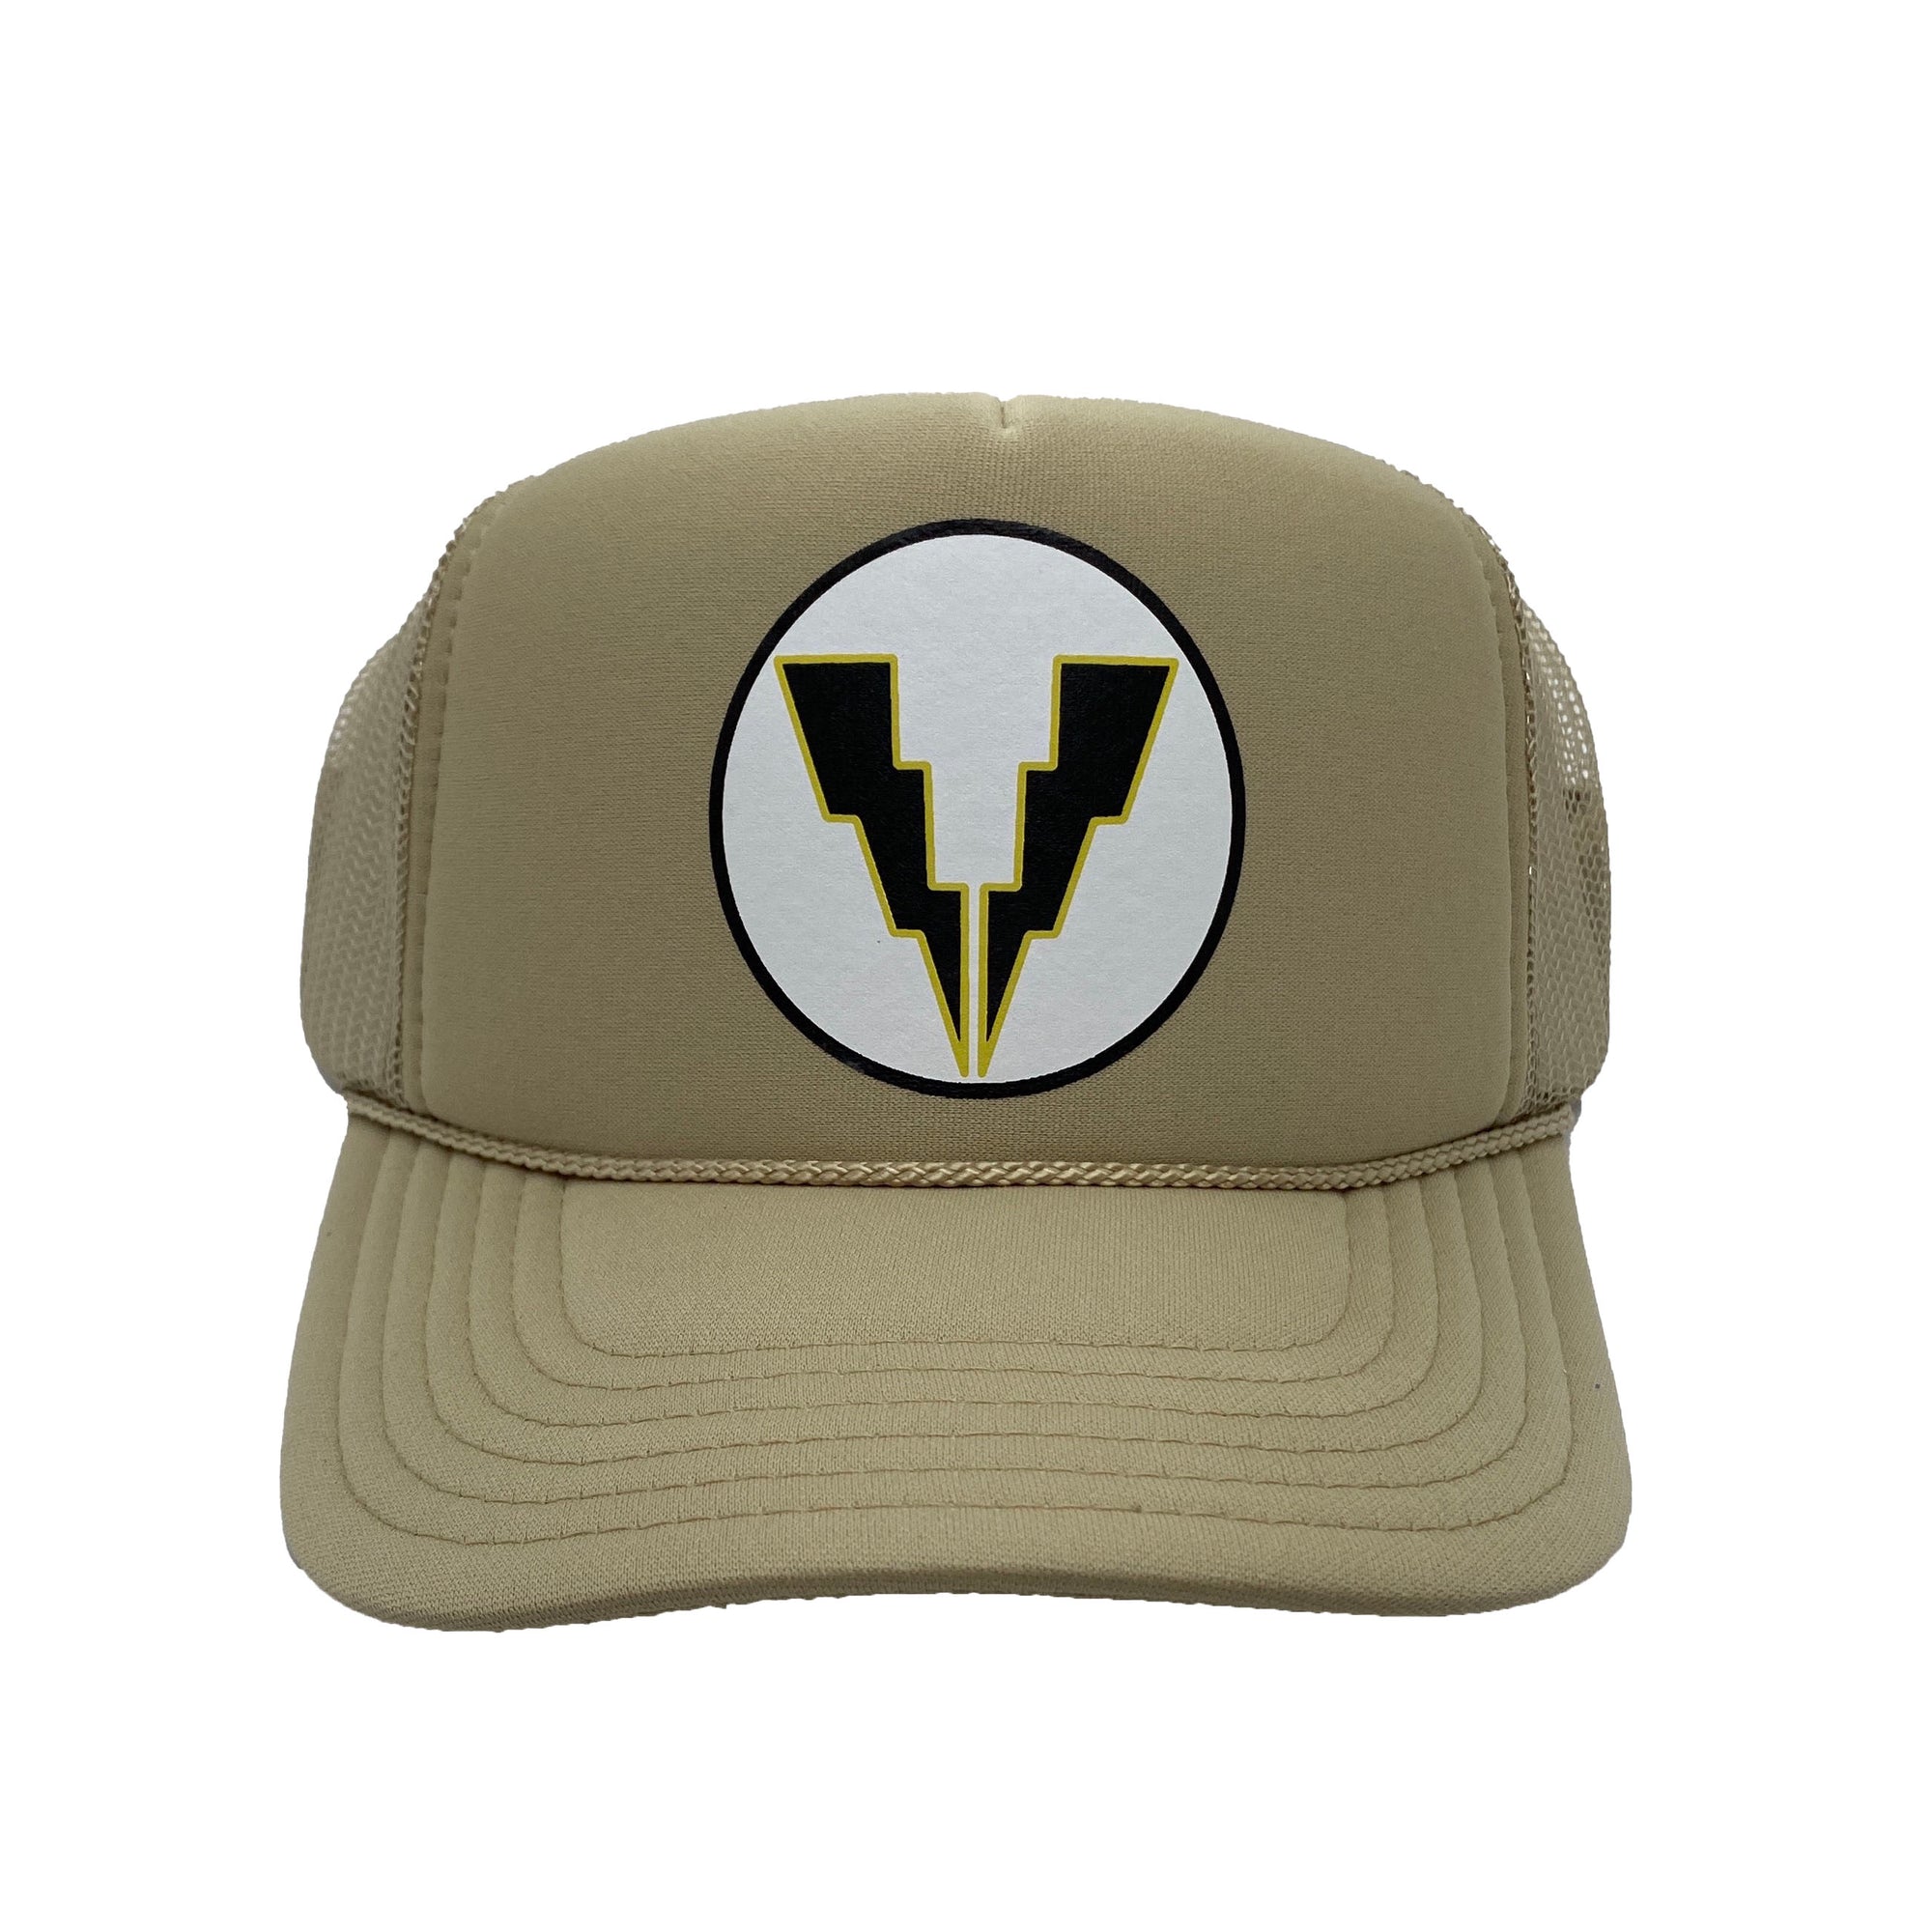 Deadrise Project Bolts Trucker Hat - Tan